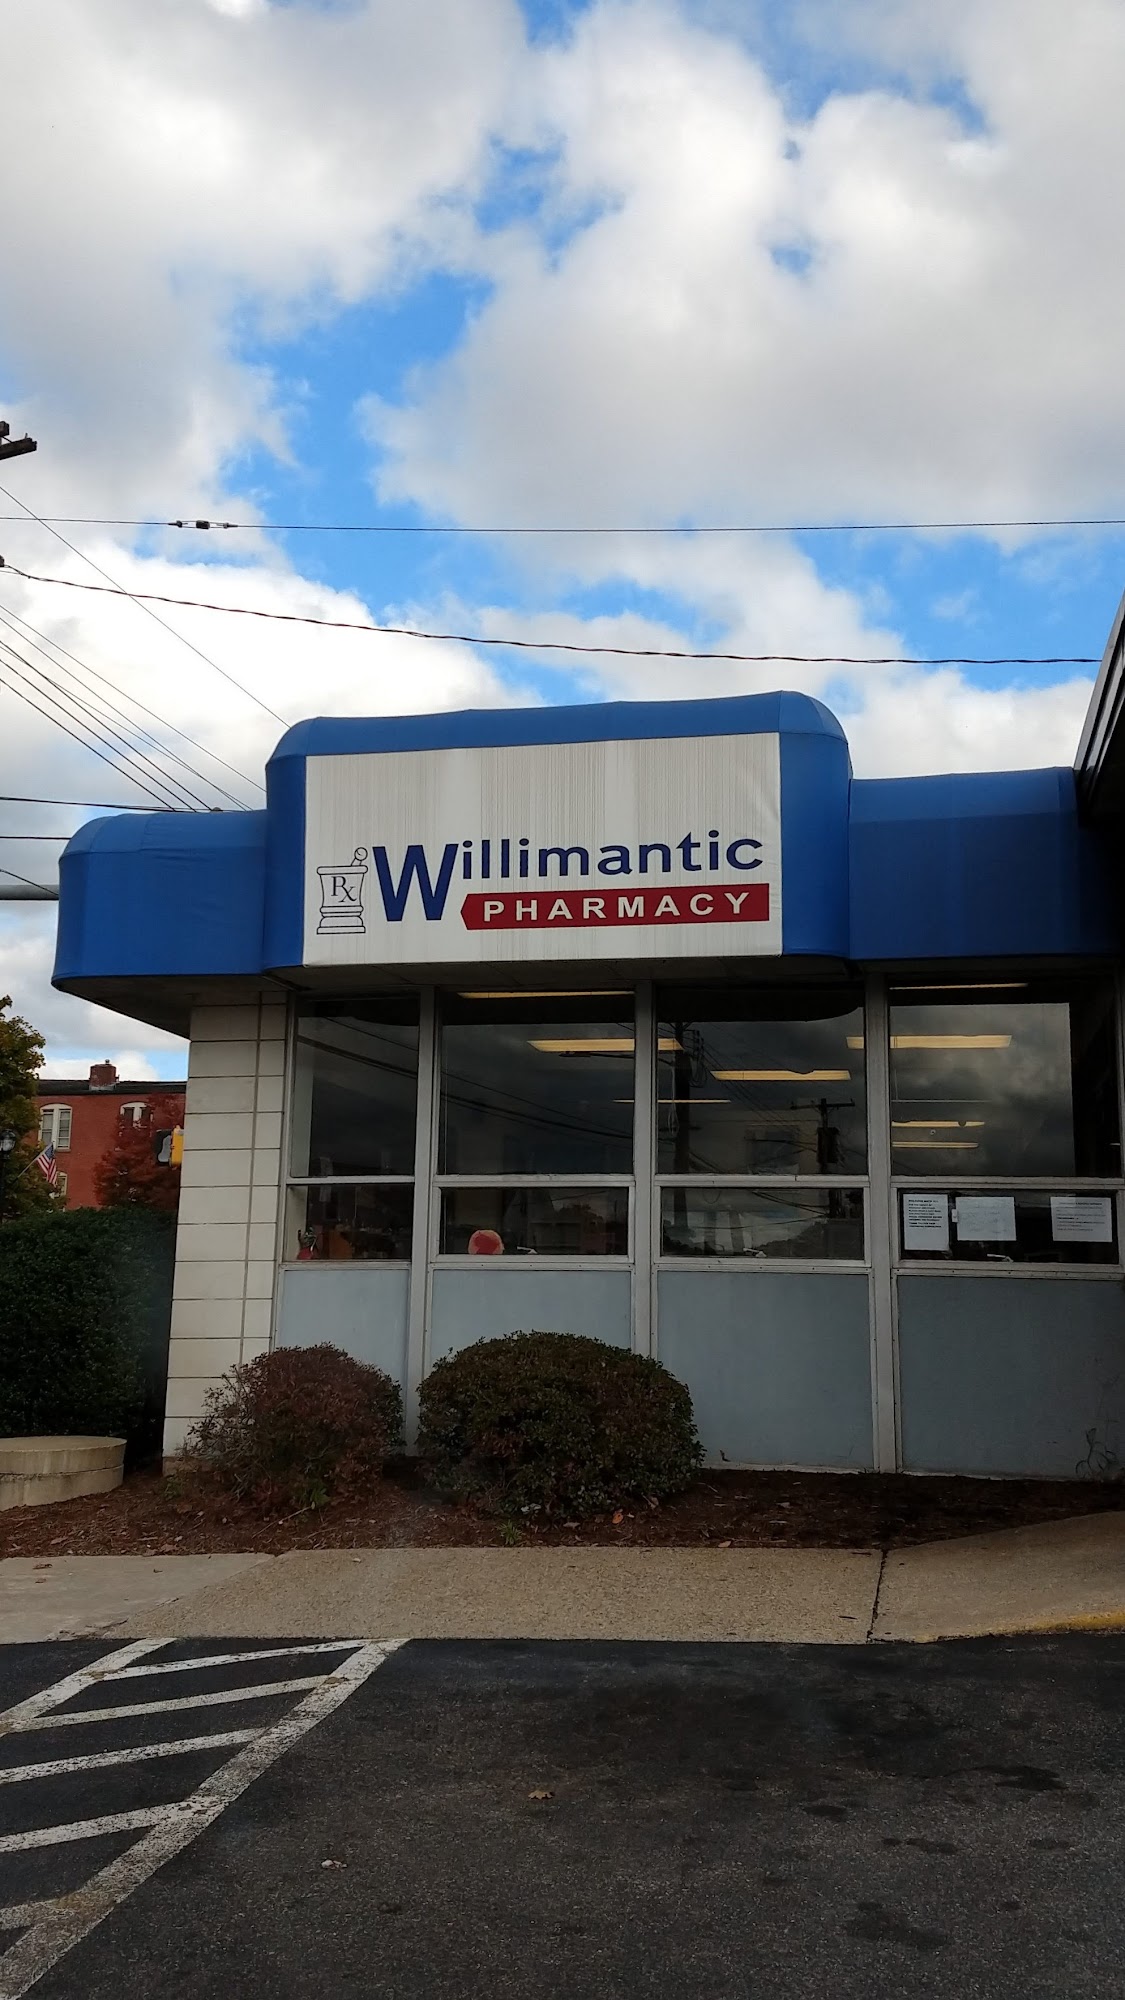 Willimantic Pharmacy